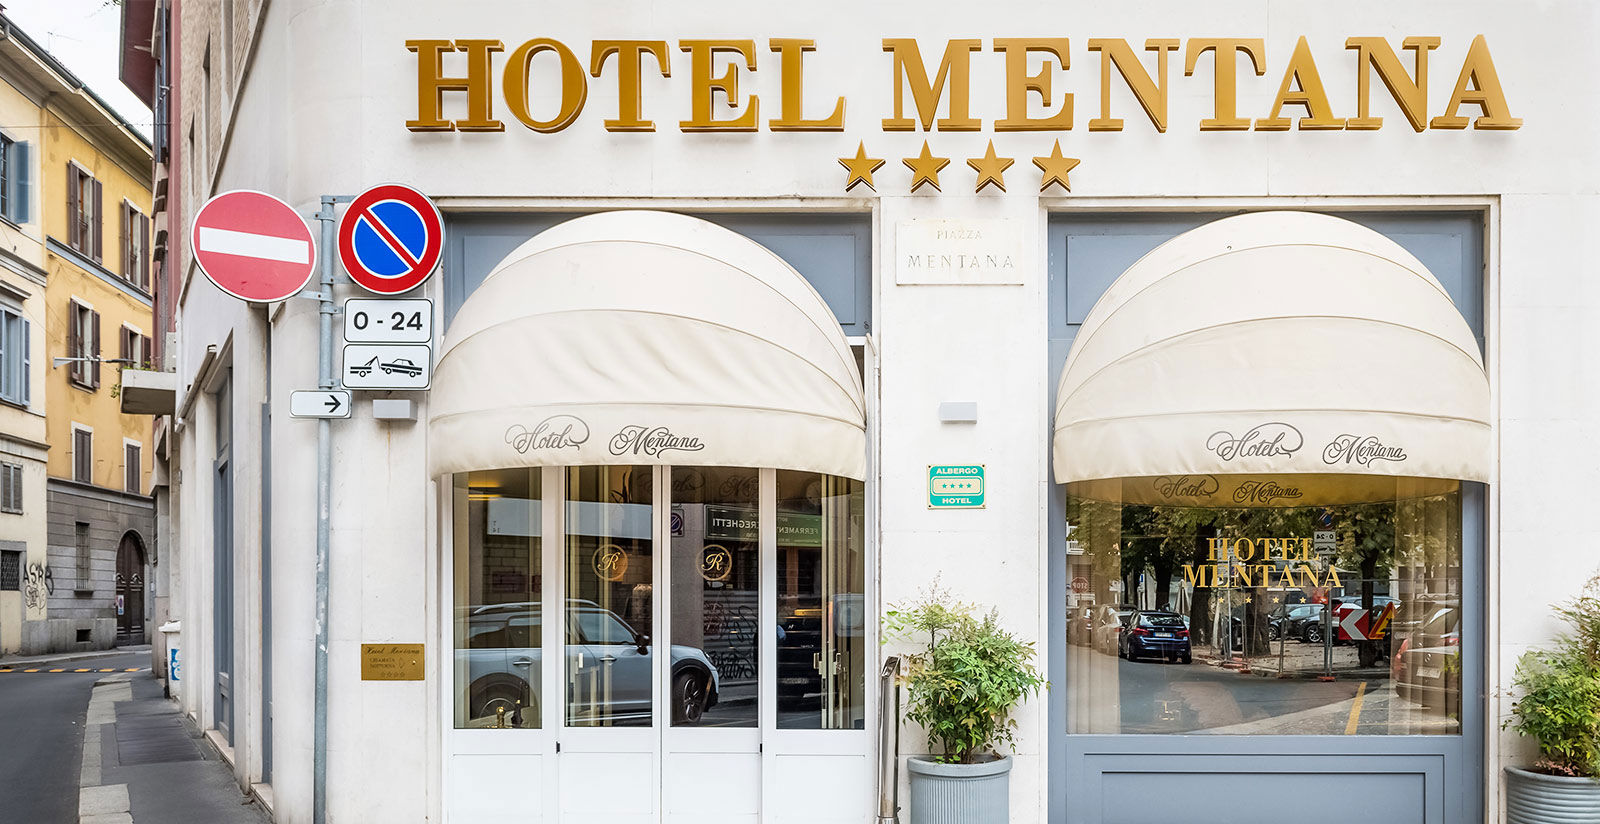 Hotel Mentana - Location per matrimoni Milano centro 4